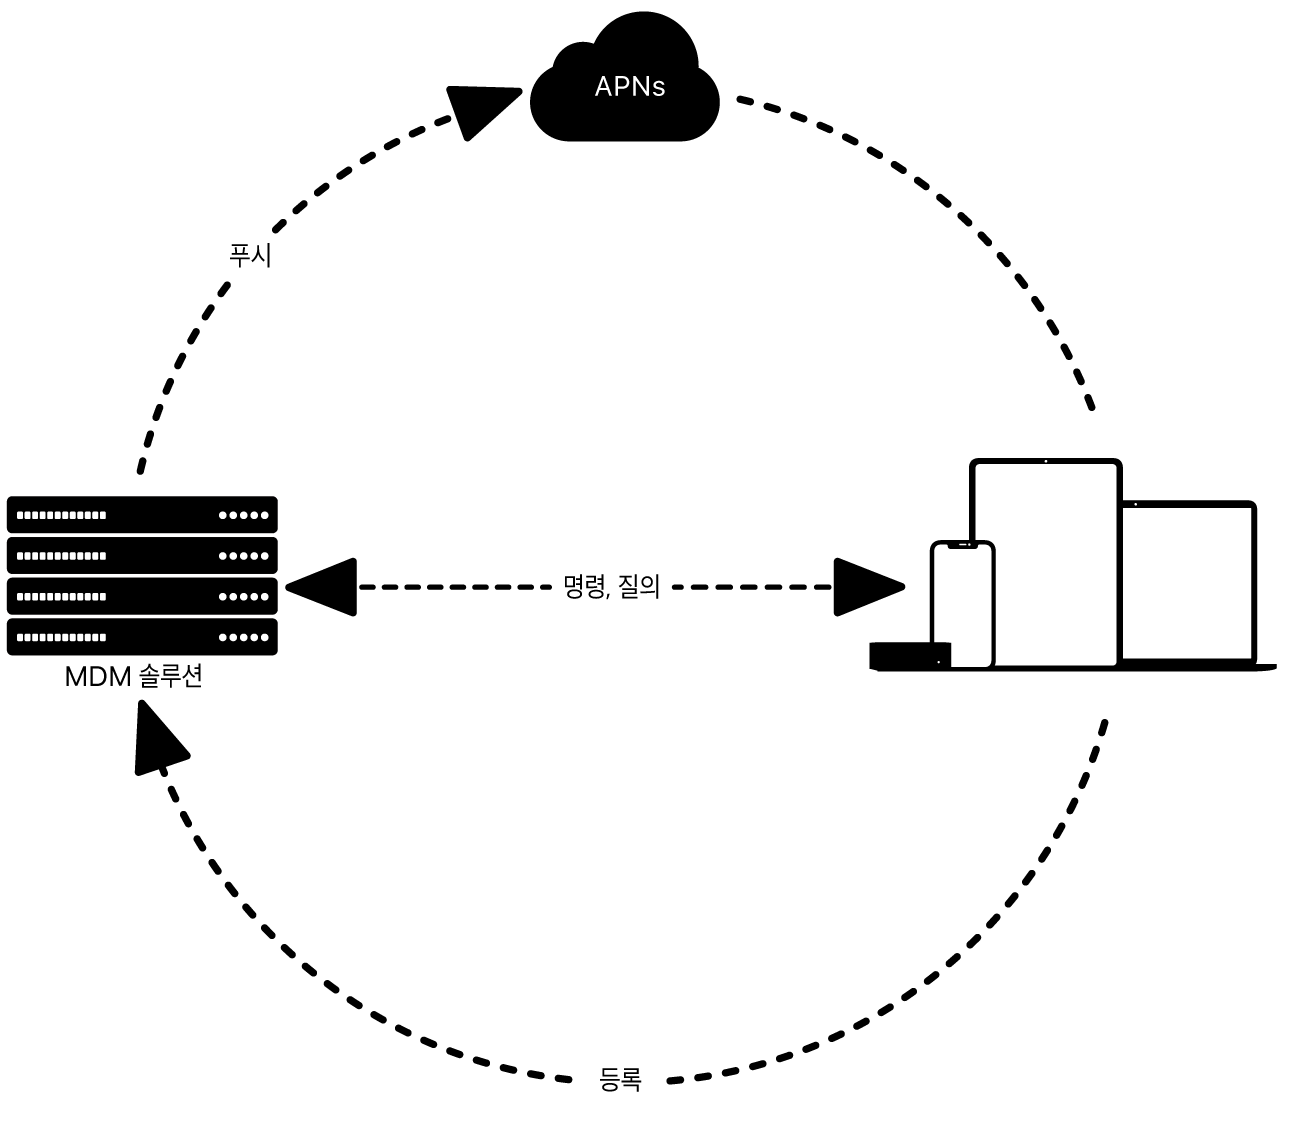 MDM 솔루션에서 APNs가 어떻게 사용되는지 표시된 다이어그램.